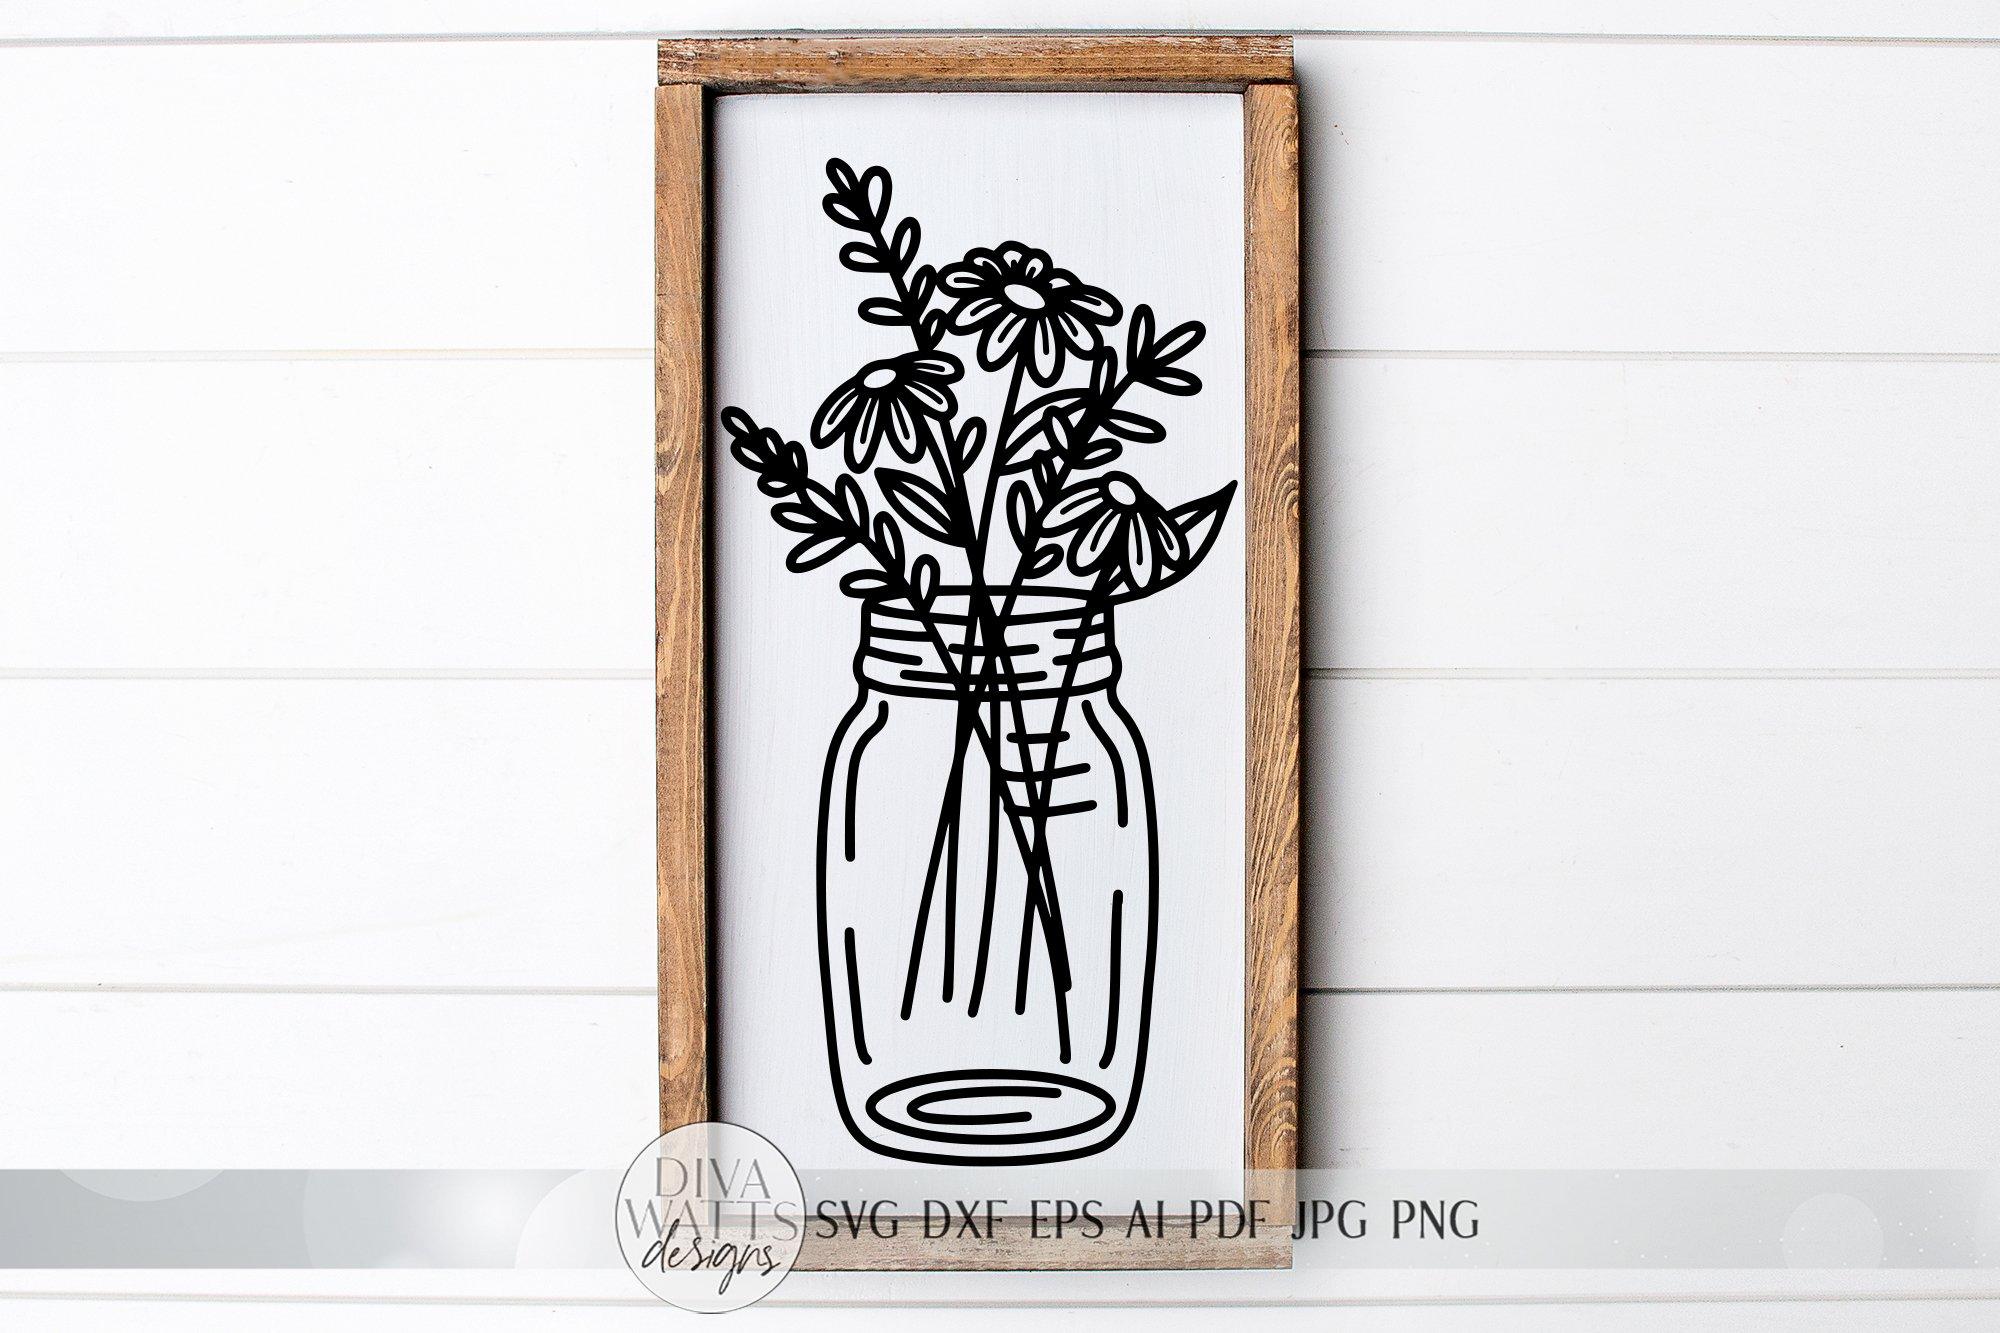 Download Mason Jar Flower Arrangement Svg Line Drawing Svg Farmhouse Art Sign Svg Dxf And More So Fontsy